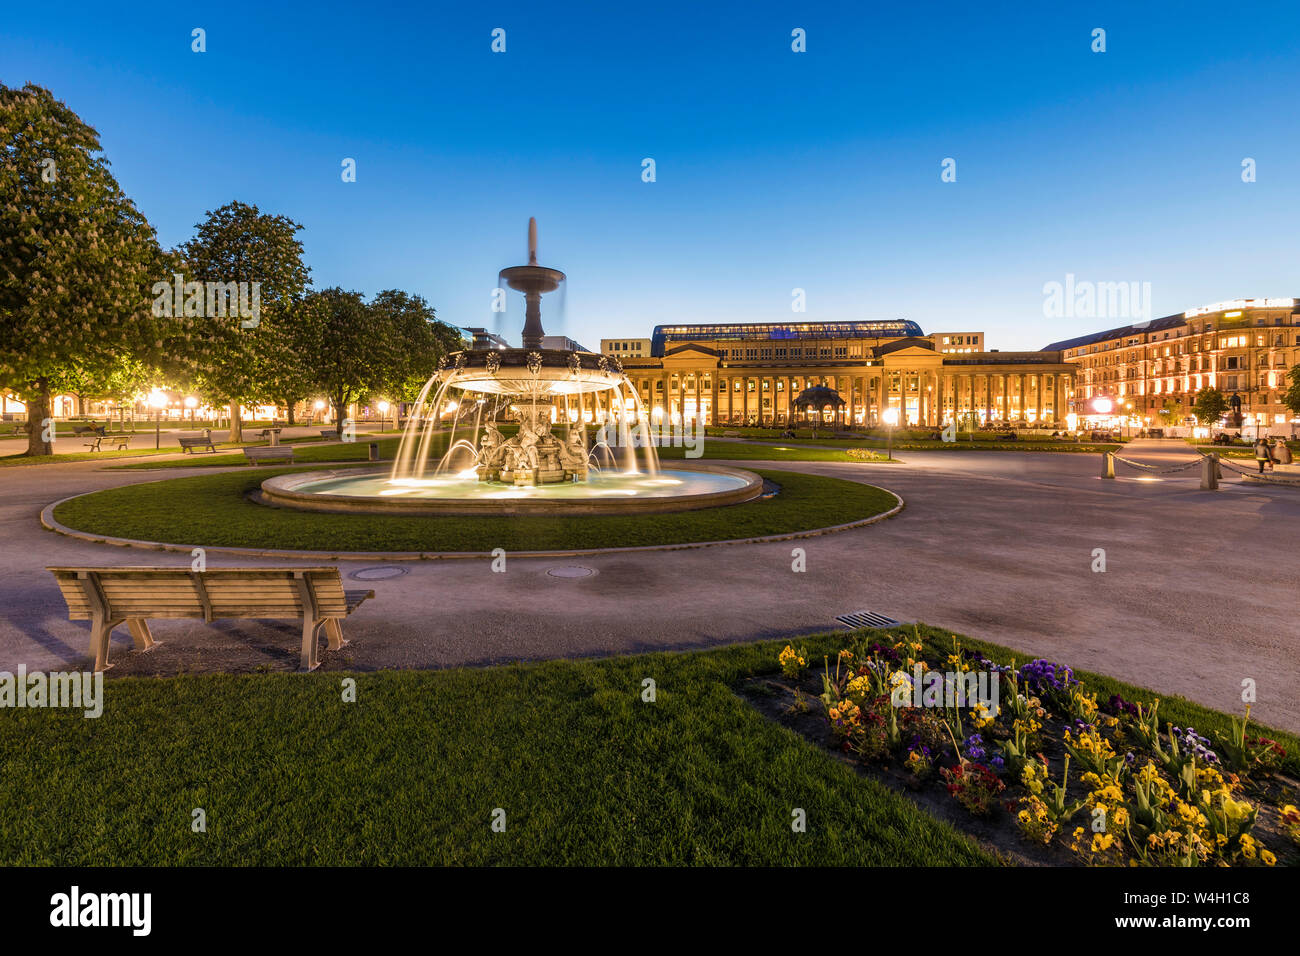 La plaza del palacio con la fuente en frente de Koenigsbau al anochecer, Stuttgart, Alemania Foto de stock